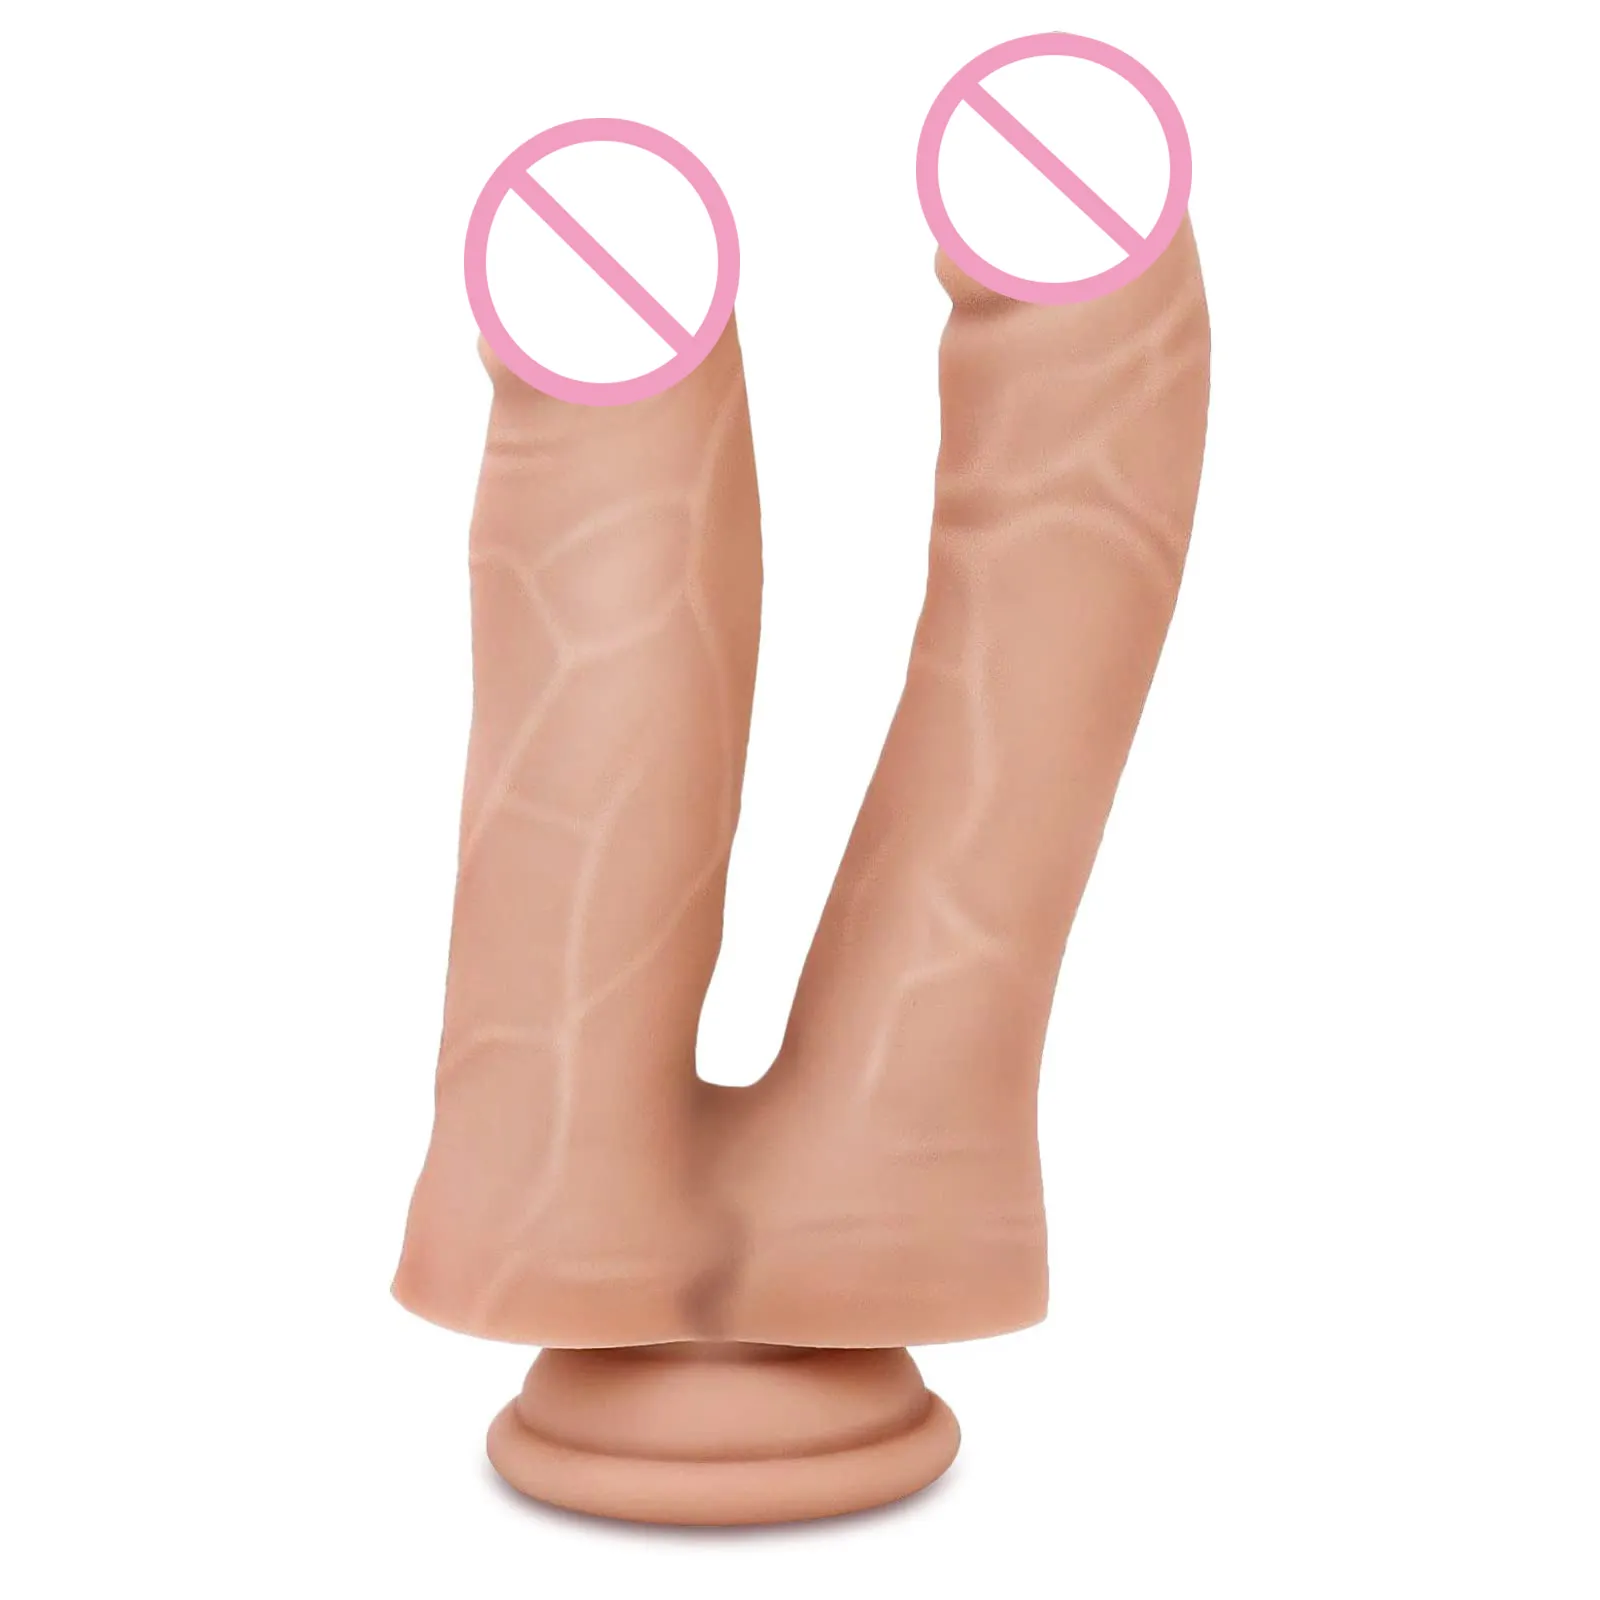 Kadınlar için gerçekçi çift uçlu yapay Penis uzun büyük yapay Penis mastürbasyon vajina G Spot stimülasyon gerçekçi erkek Penis yetişkin seks oyuncakları